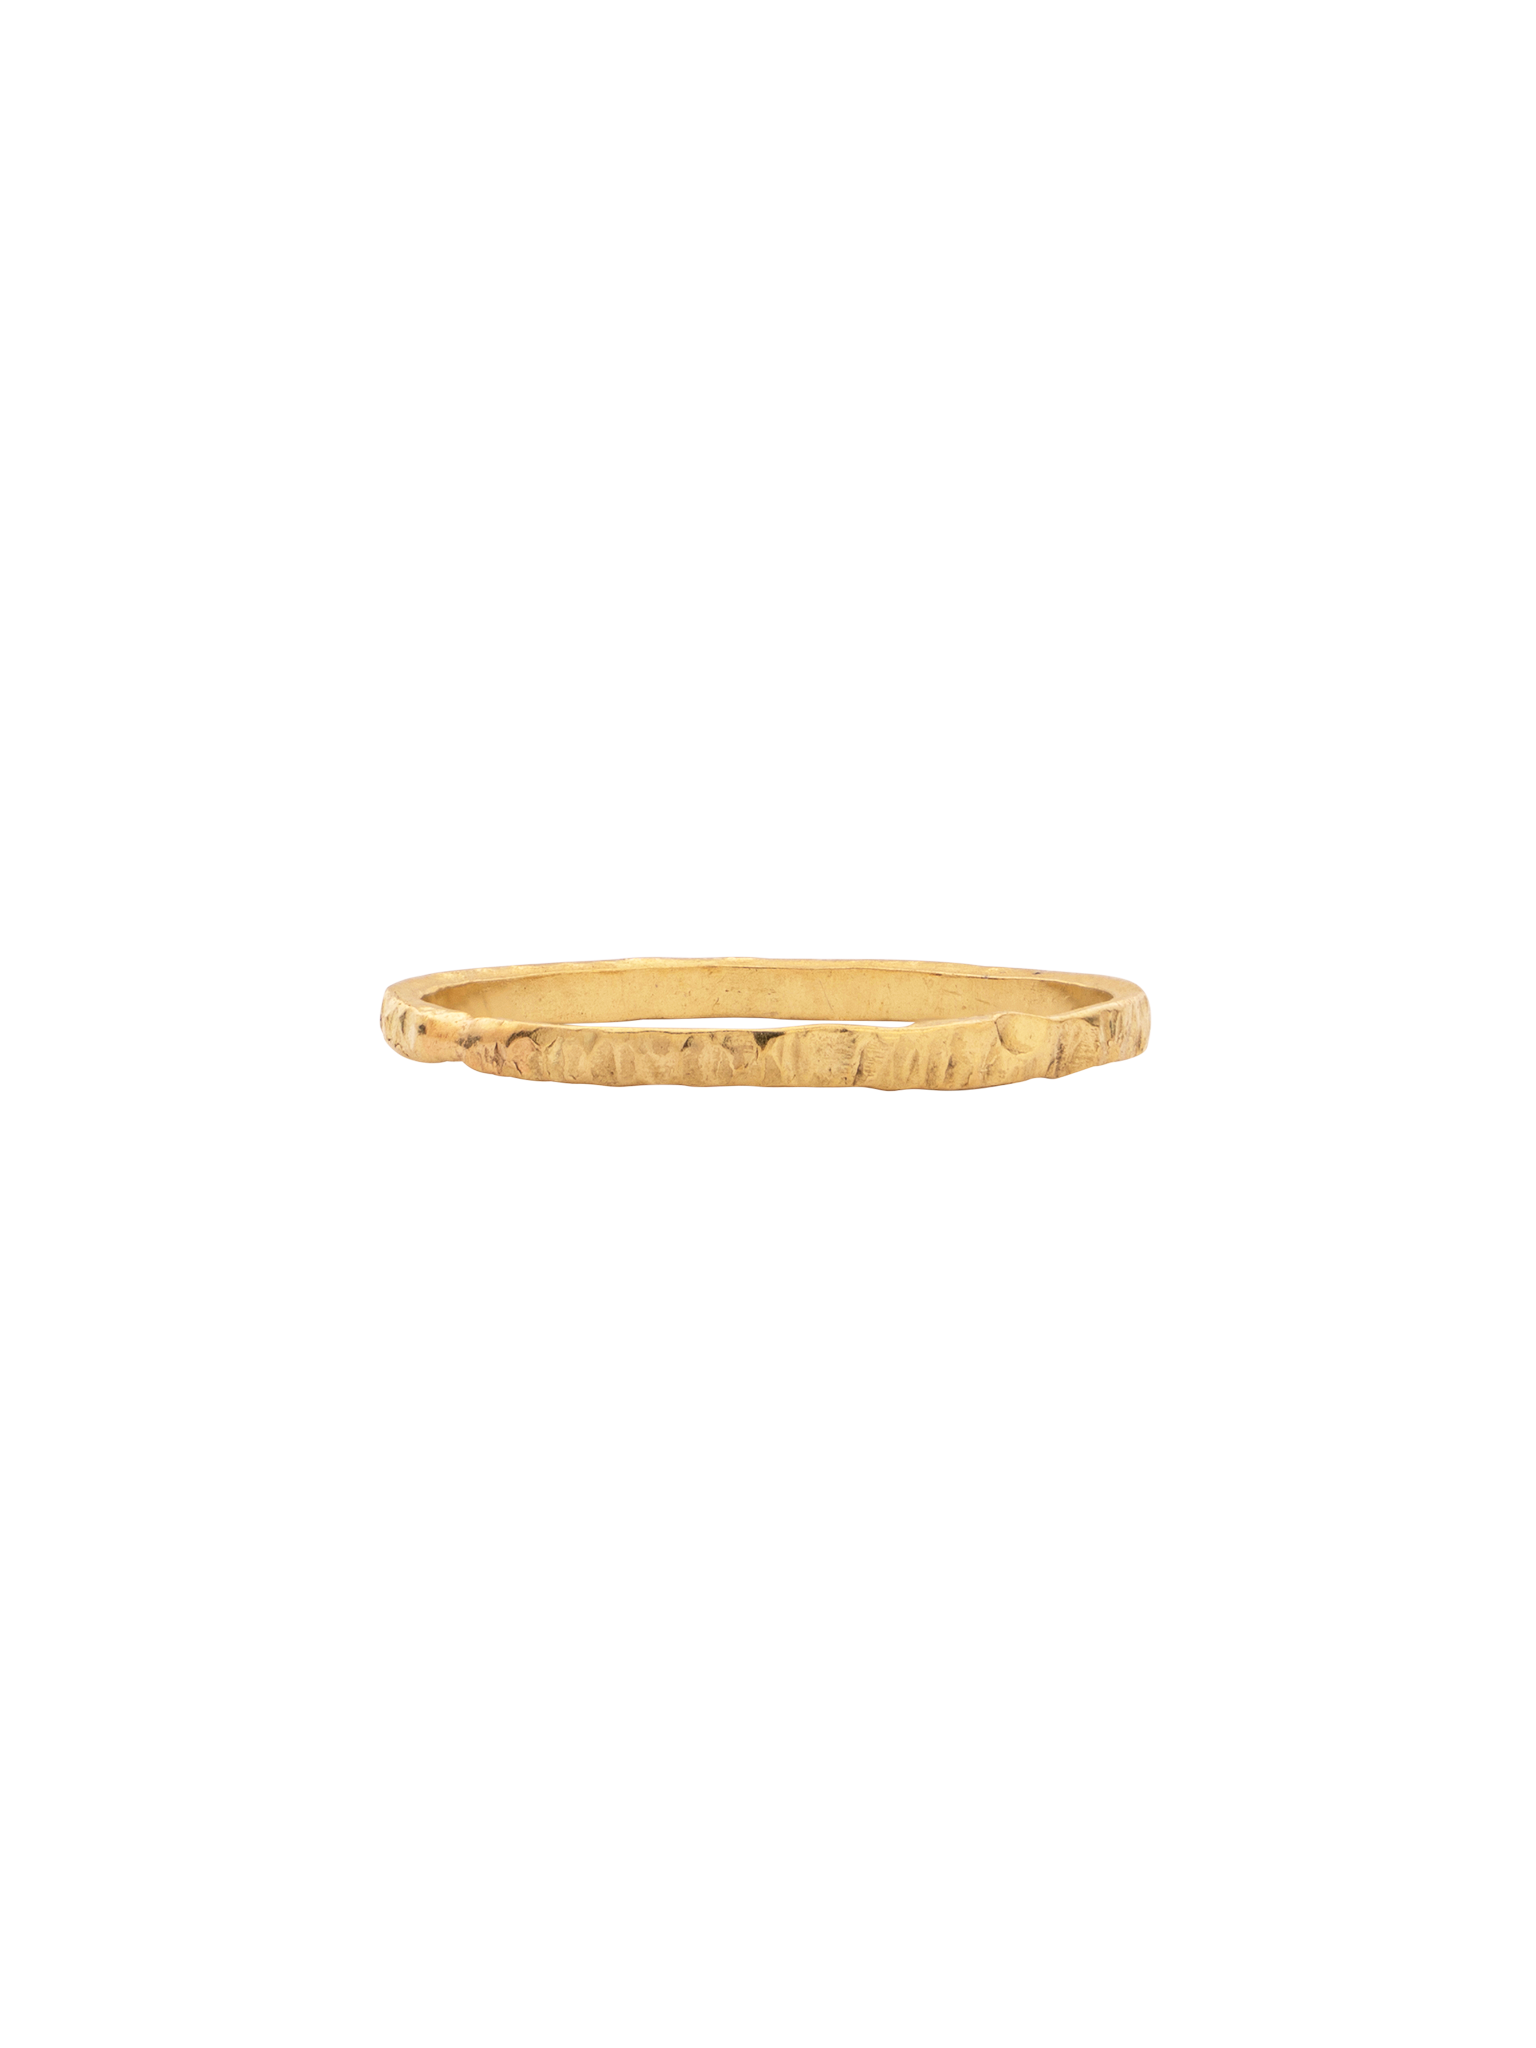 Gold bark ring